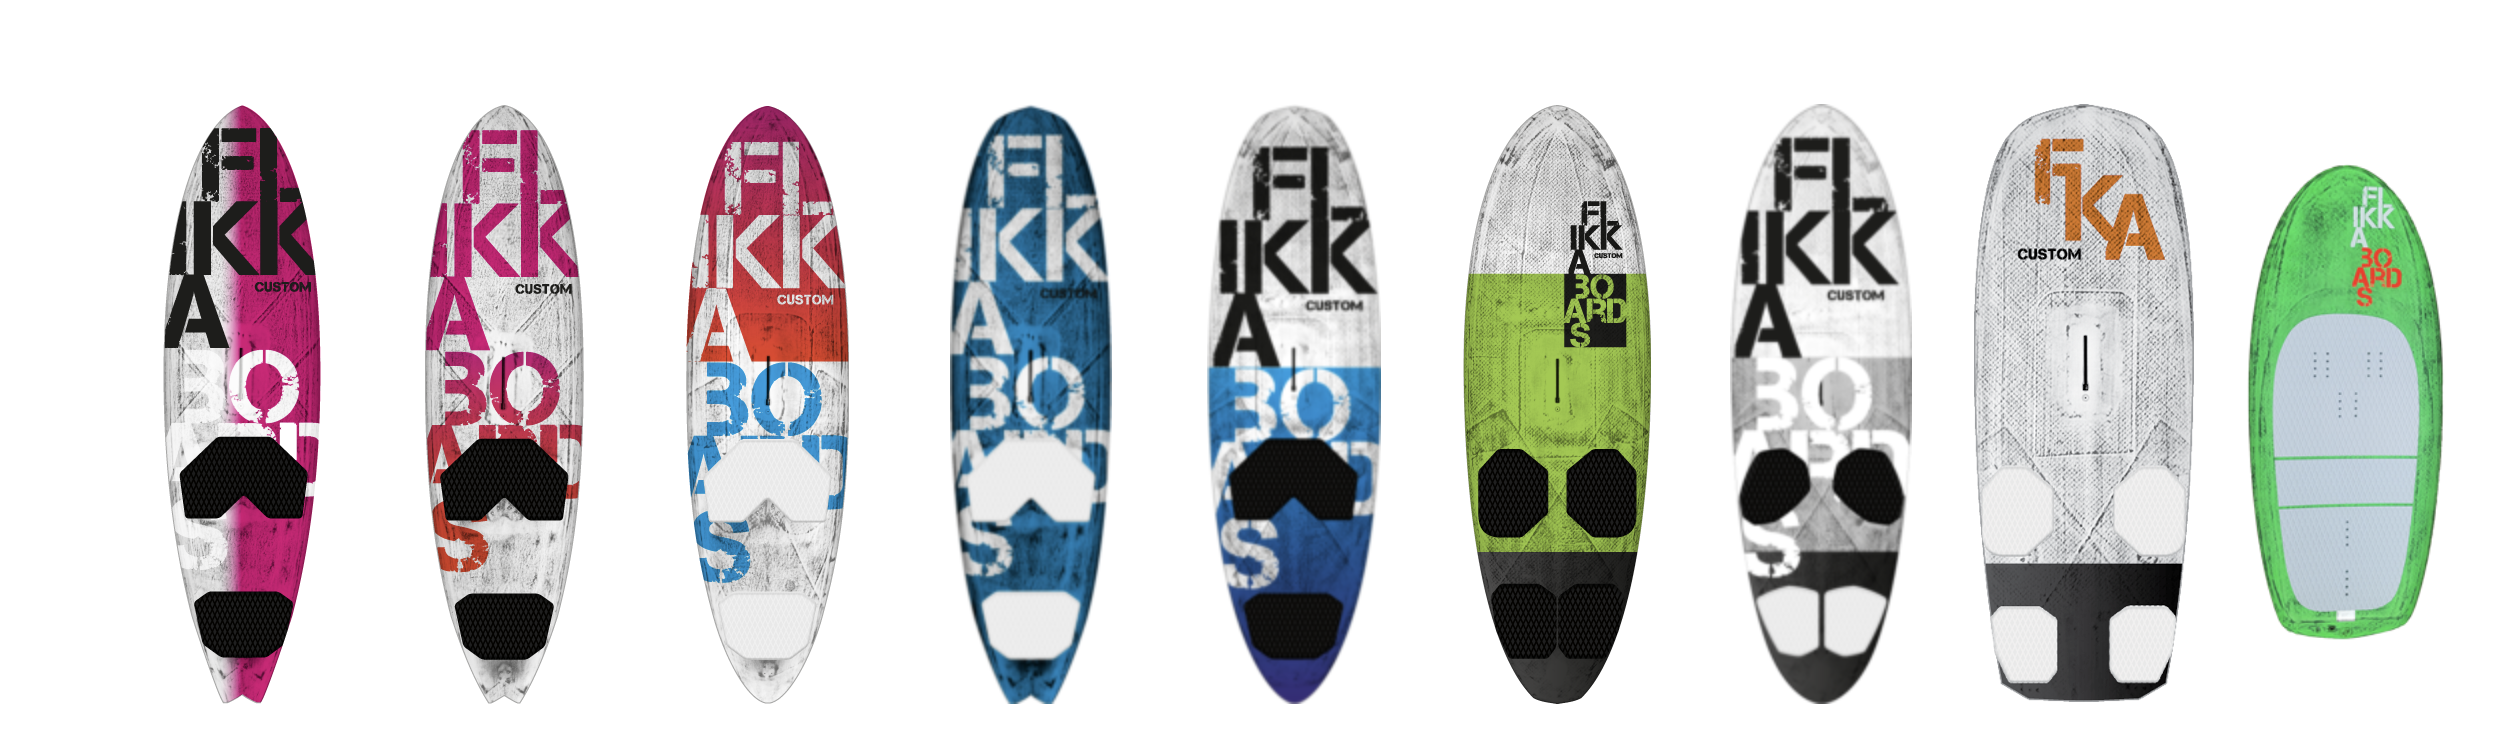 Flikka Boards – Custom Designs für den individuellen Style